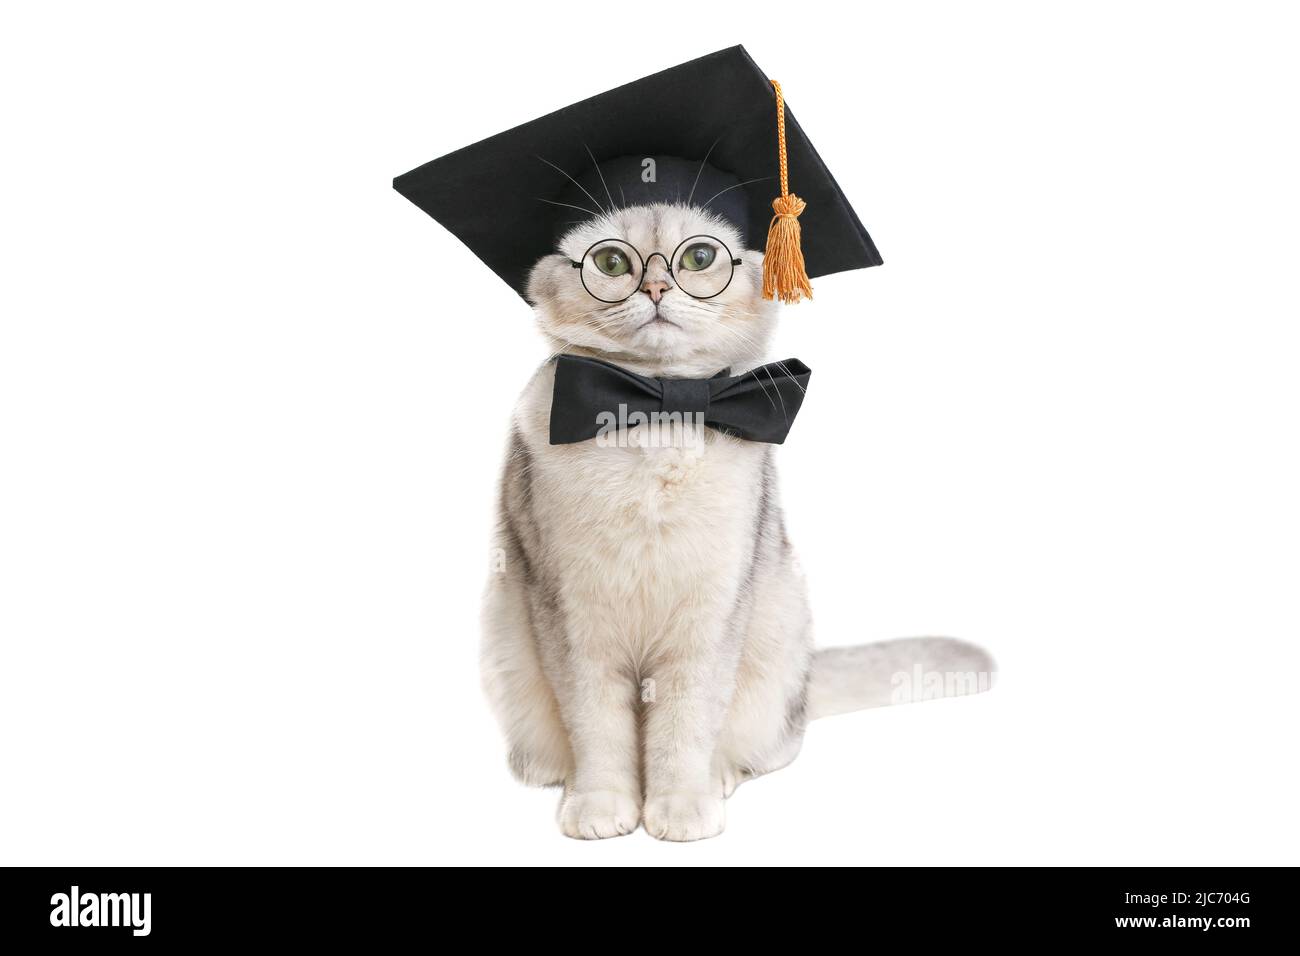 le chat drôle est assis dans un chapeau de graduation noir, un noeud papillon et des lunettes, isolés sur un fond blanc Banque D'Images